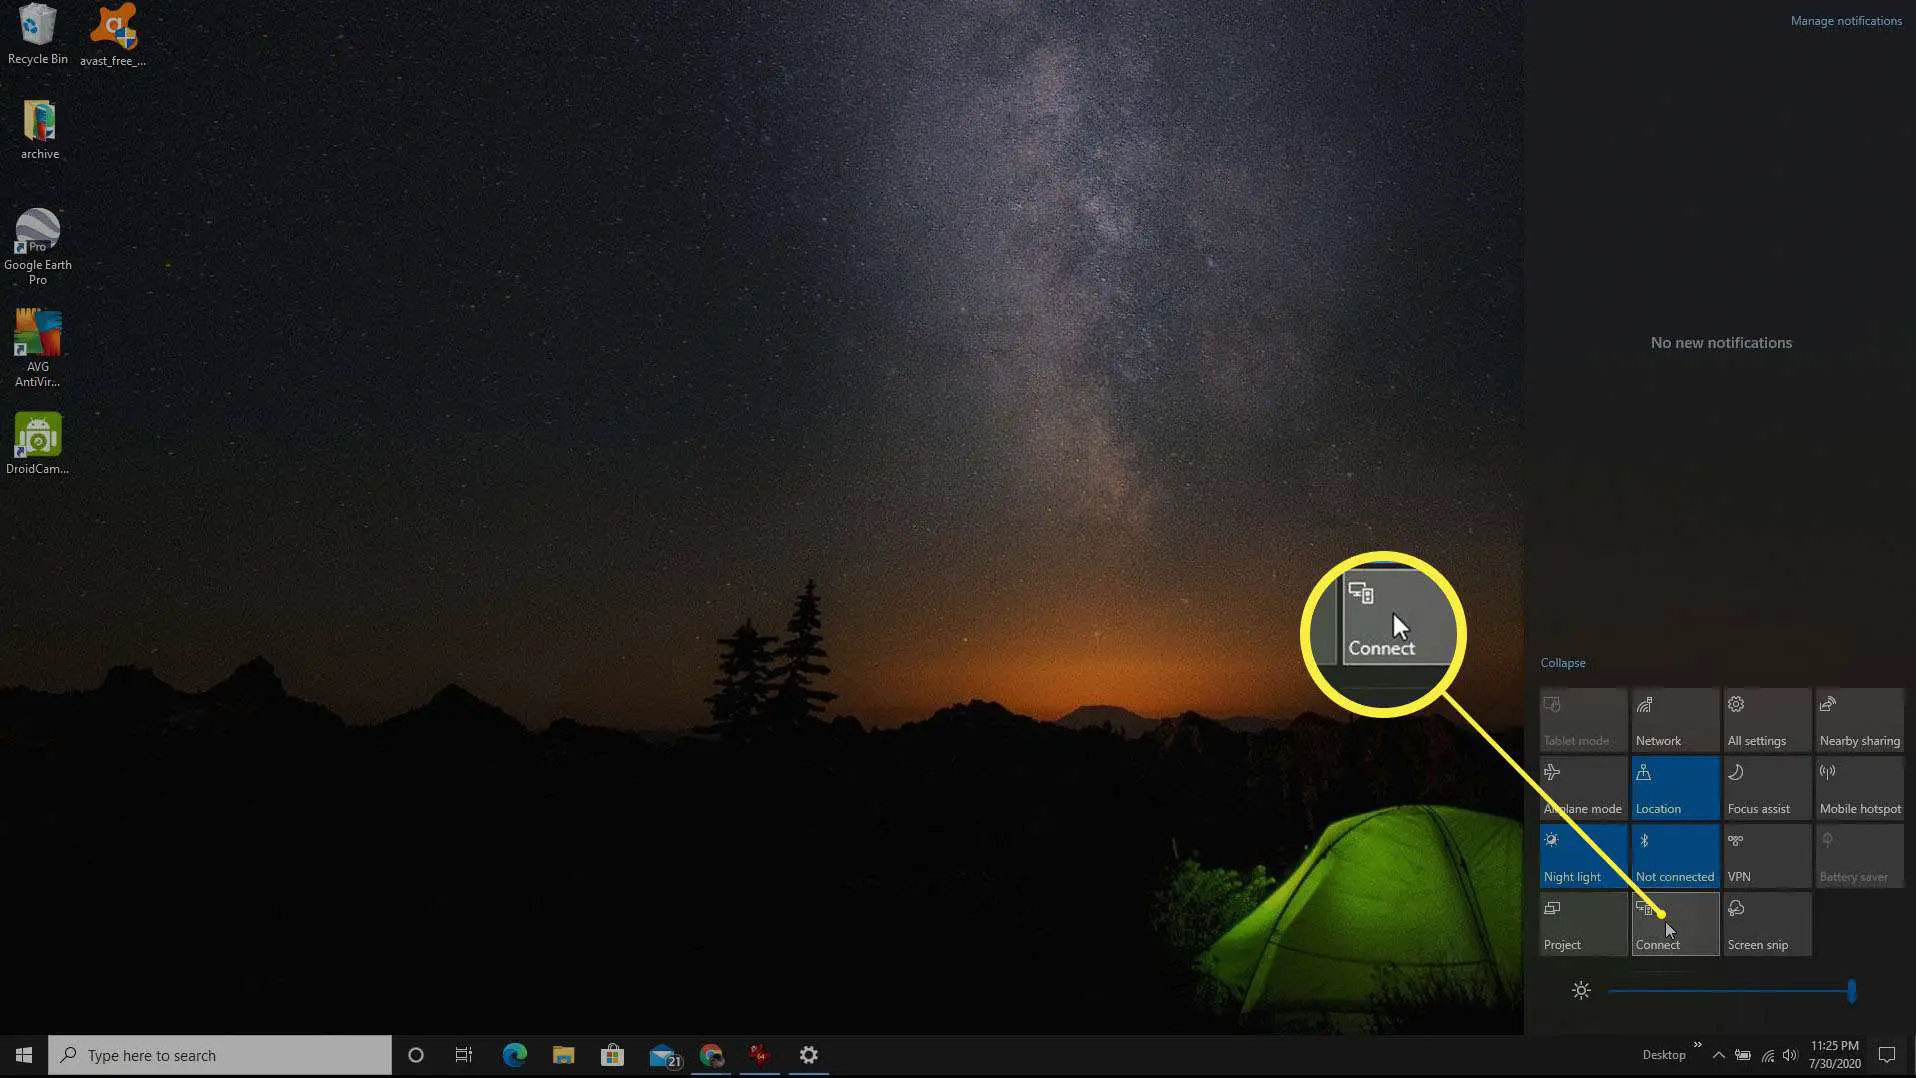 Captura de tela de conexão com o Windows 10 habilitado via Miracast.